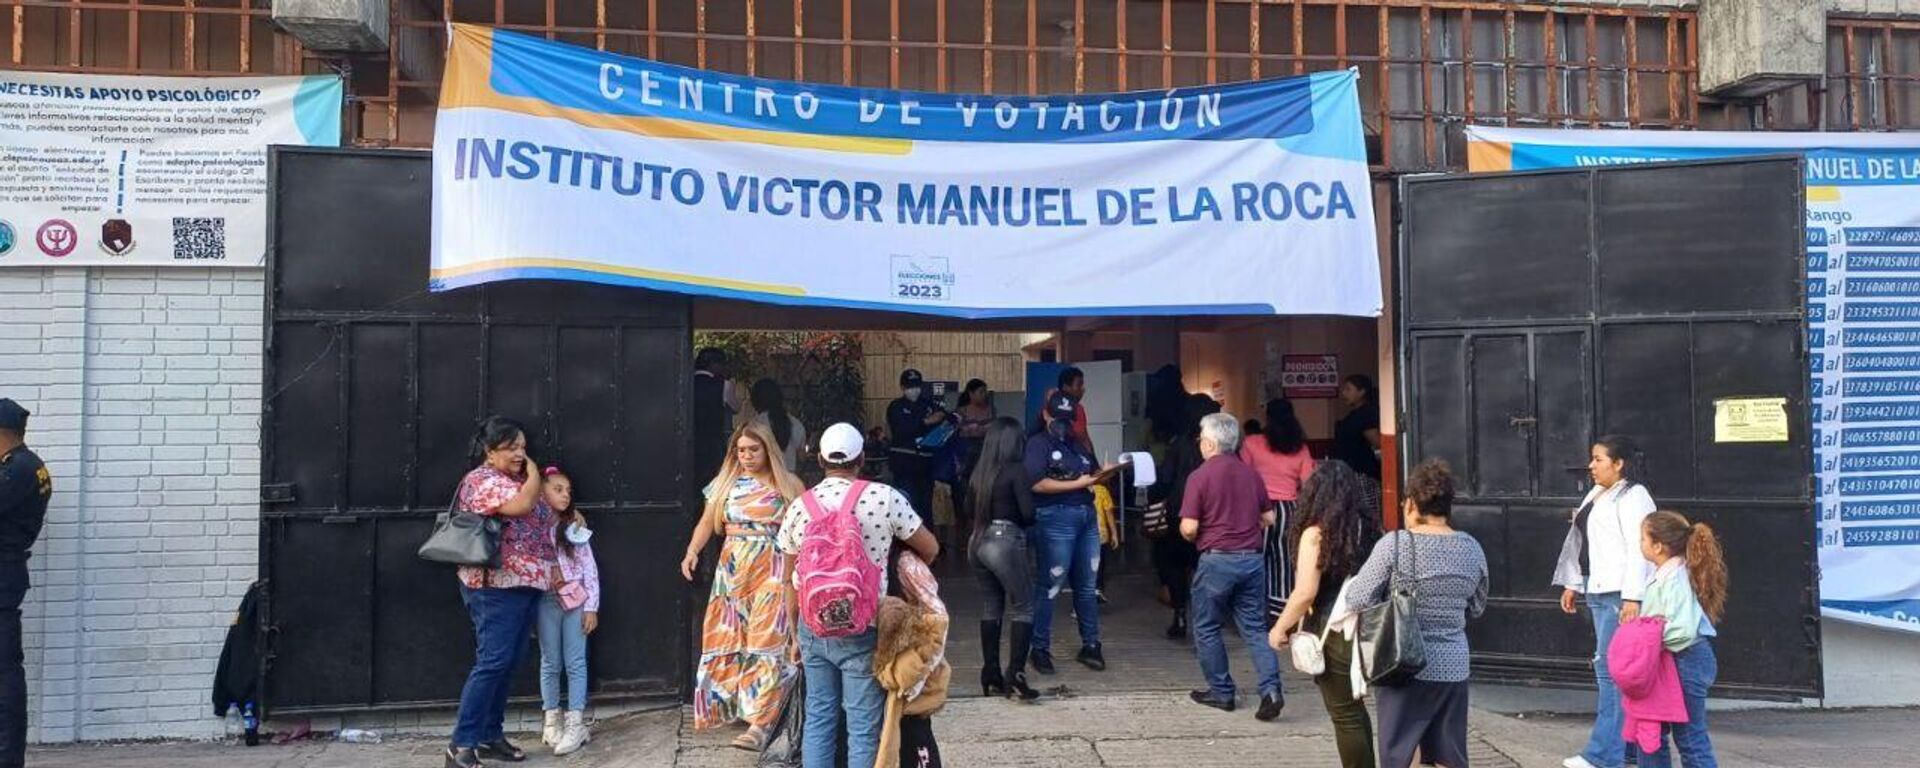 Centros de Votación ubicados en la Zona 1, casco histórico de Ciudad Guatemala, el 25 de junio de 2023  - Sputnik Mundo, 1920, 28.06.2023